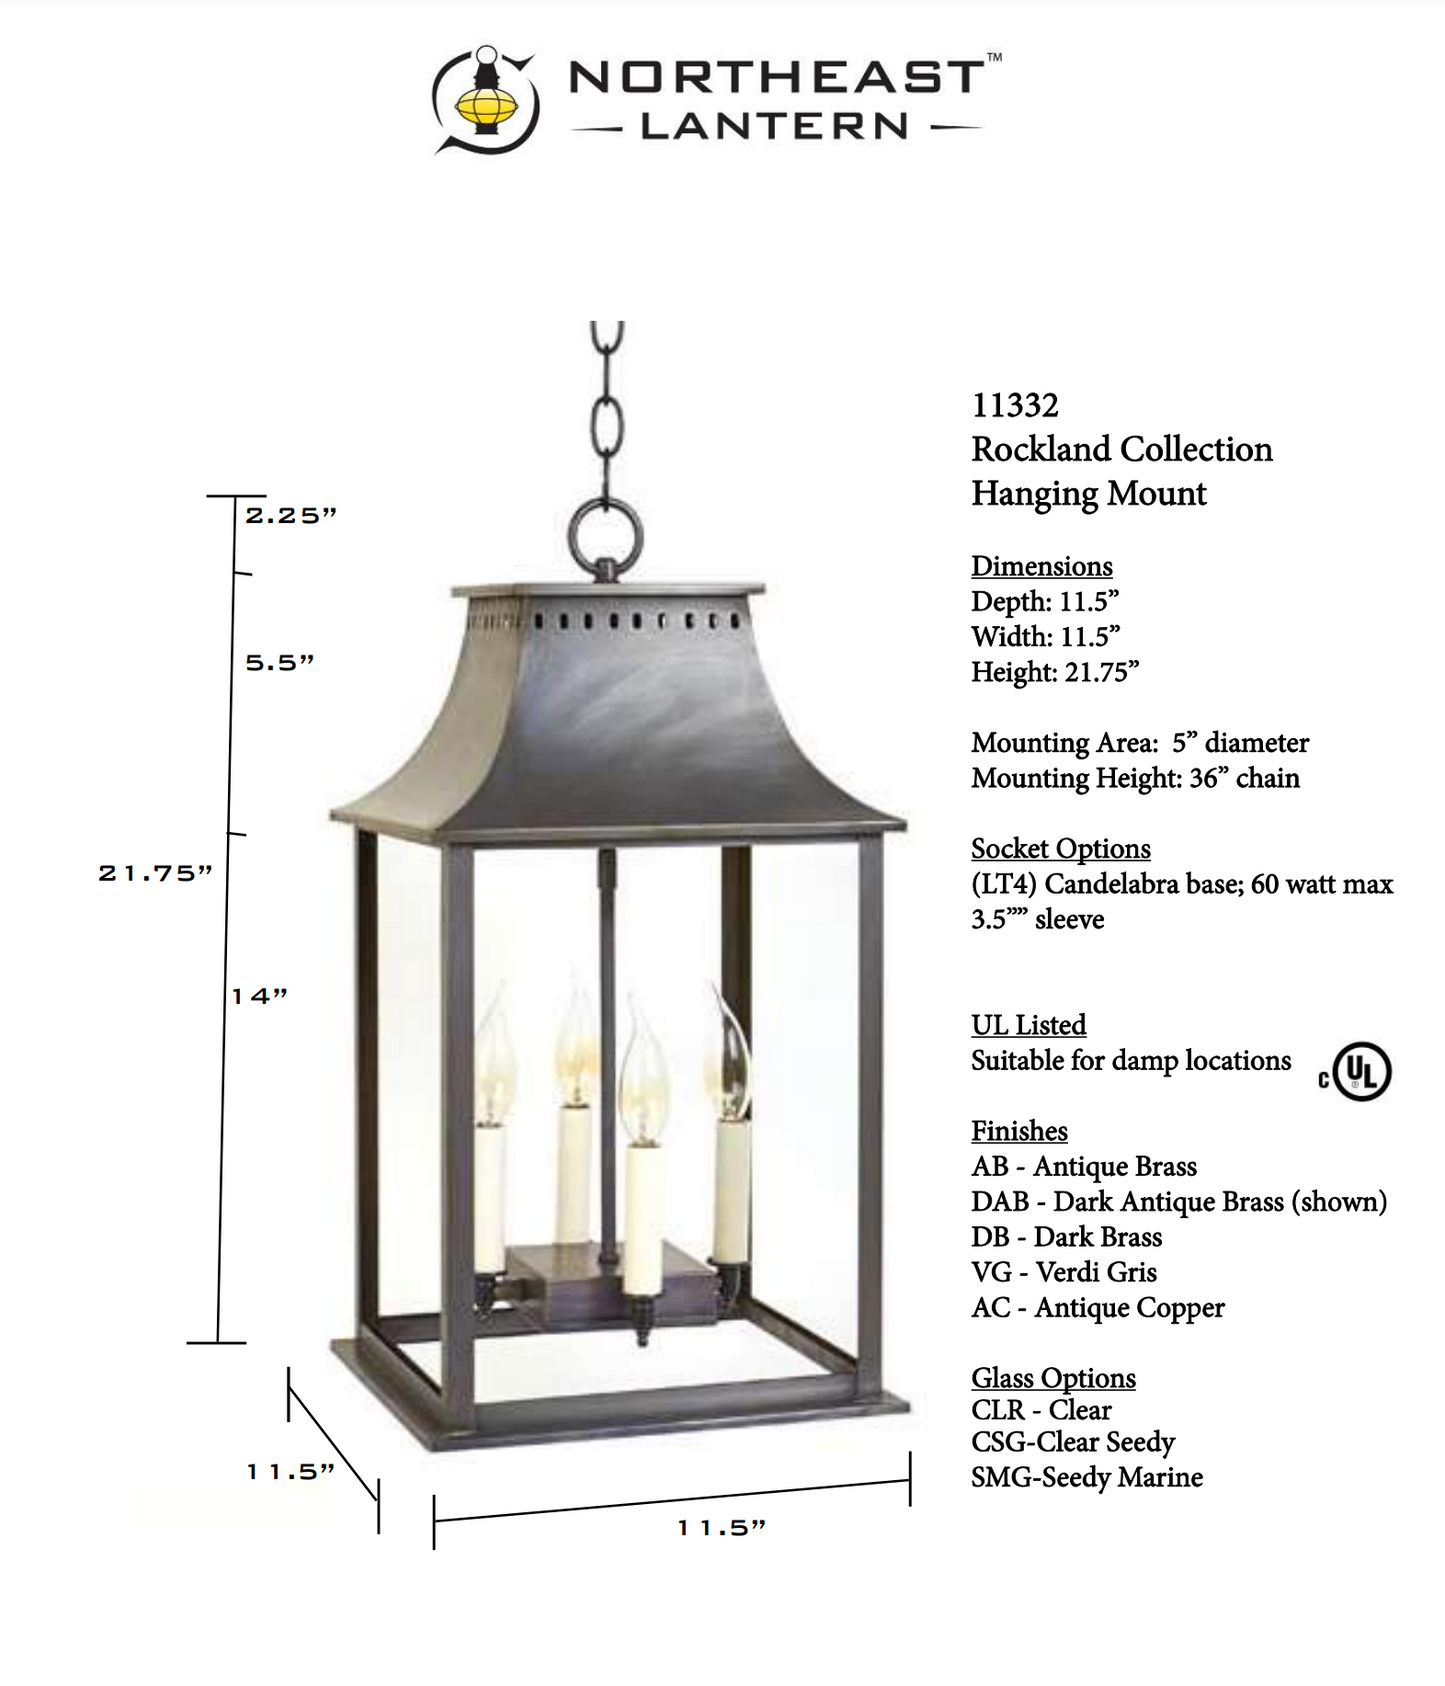 Rockland Large Hanging Lantern 11332